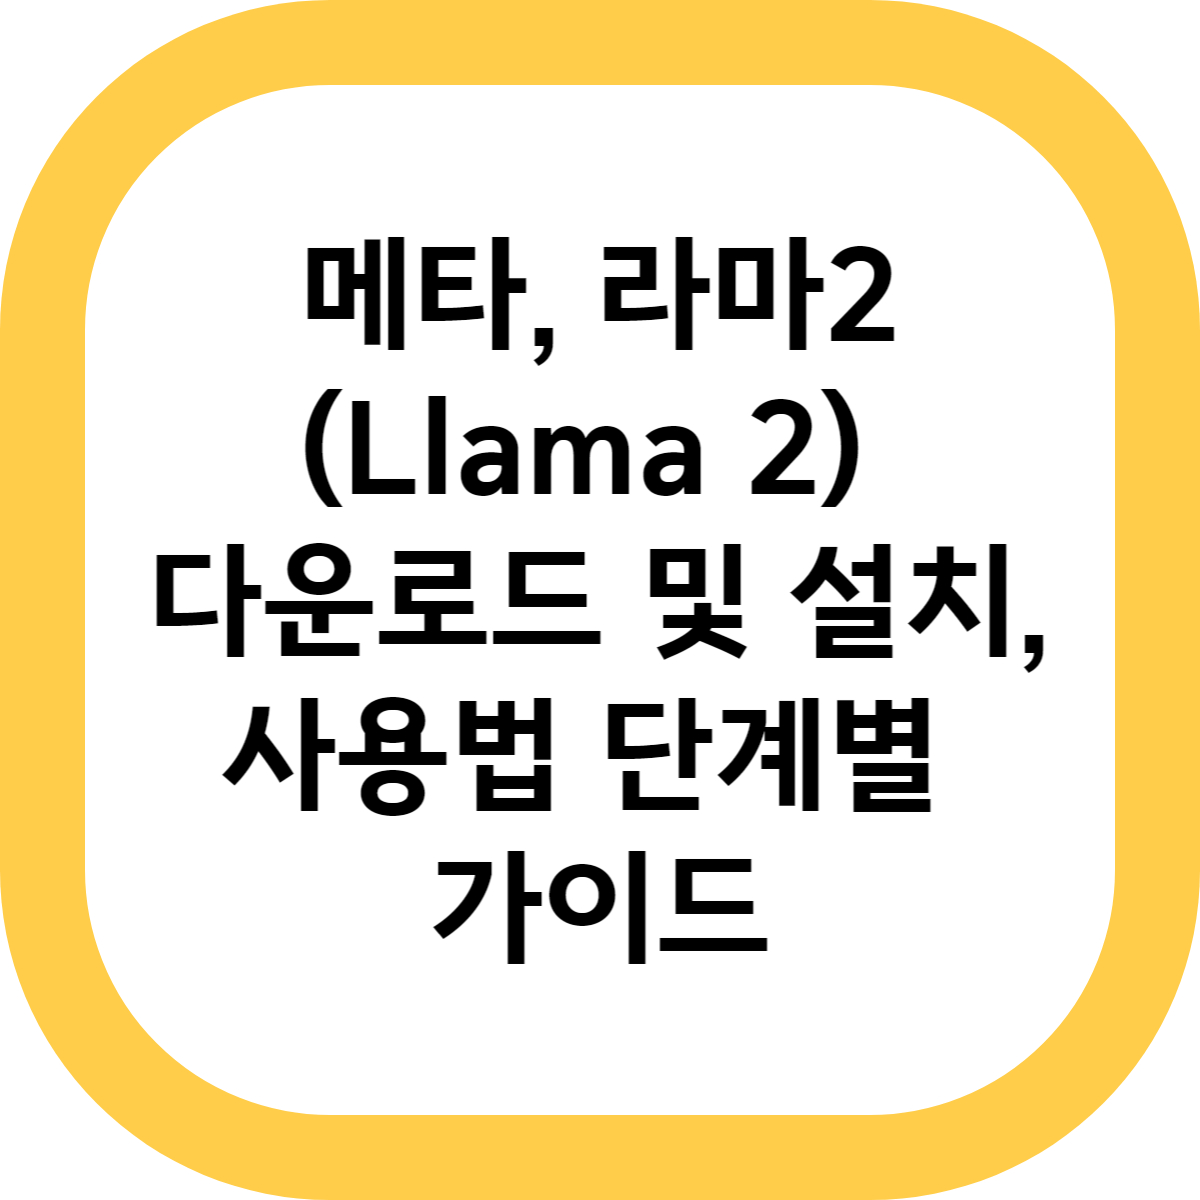 메타, 라마 2(Llama 2) 다운로드 및 설치, 사용법 단계별 가이드